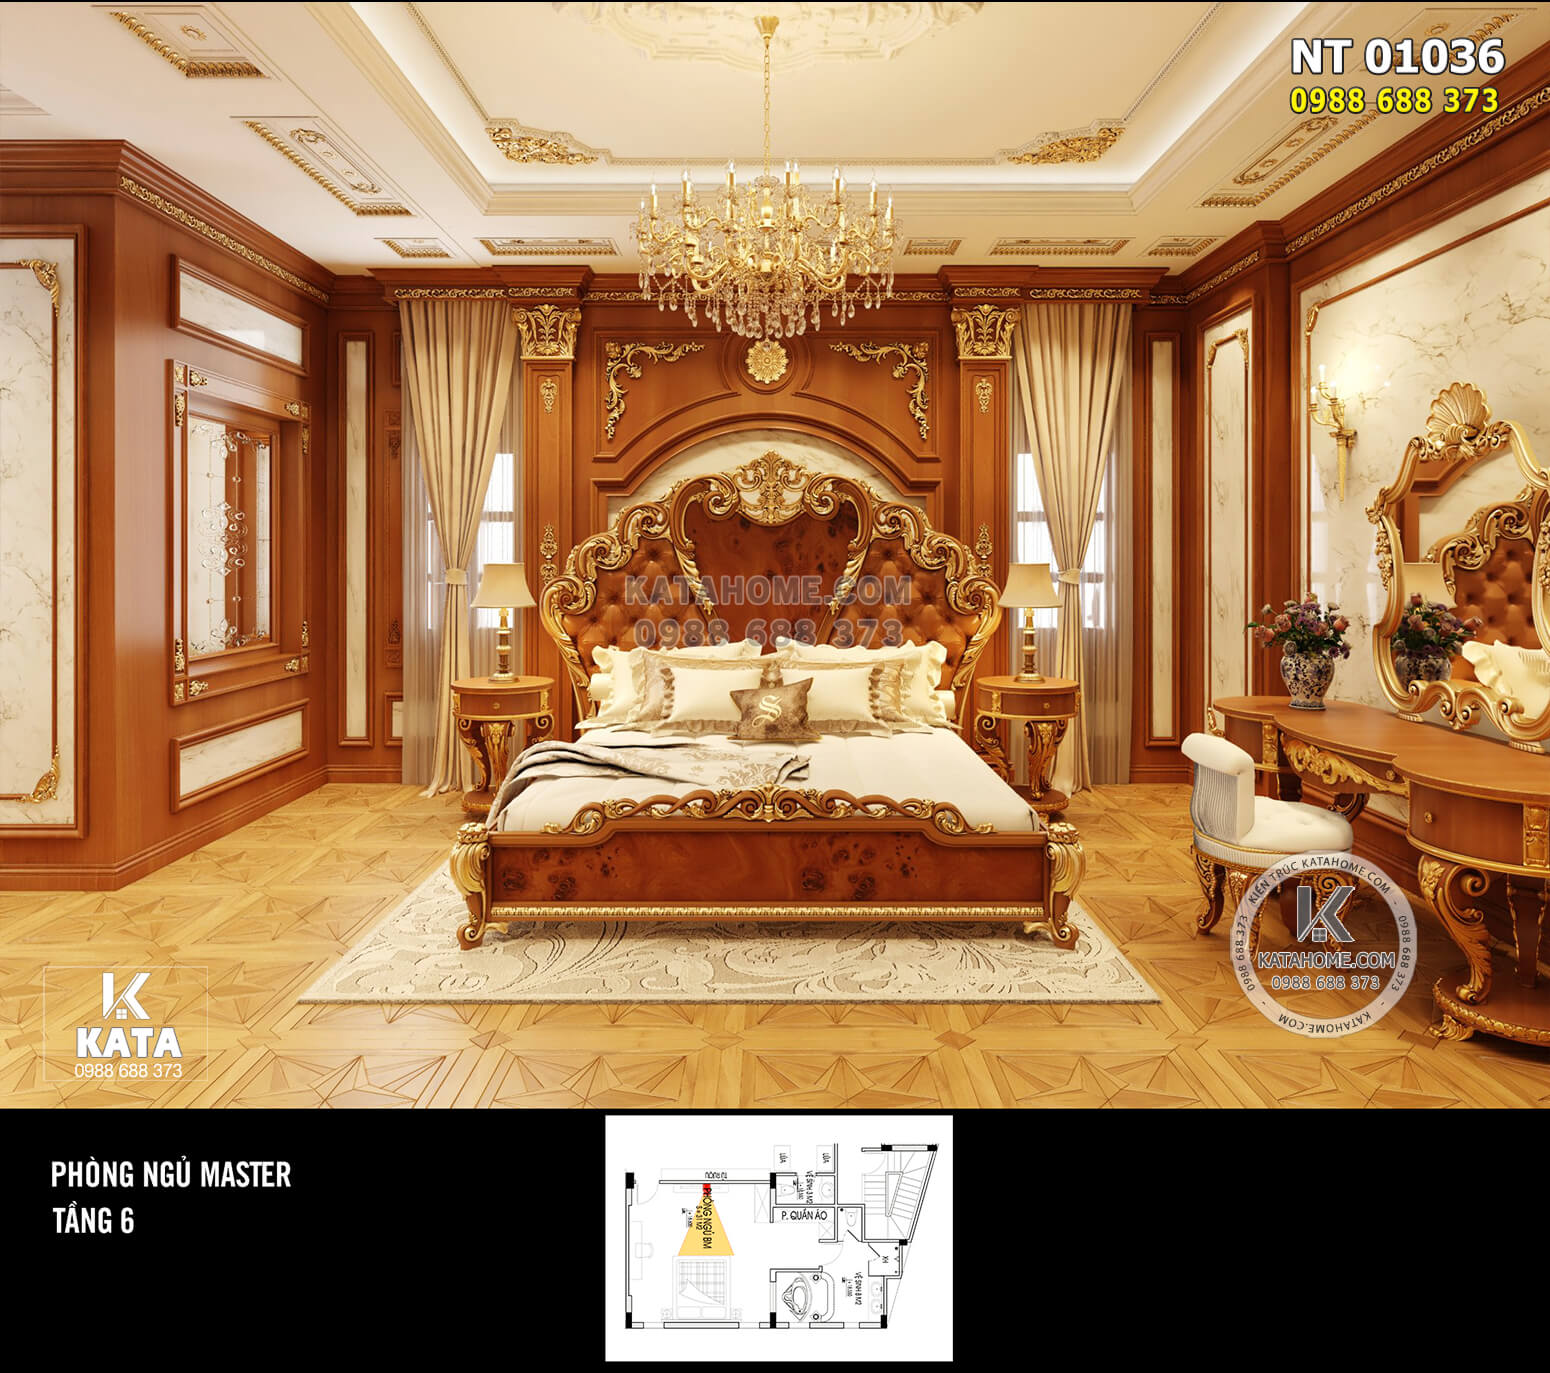 Hình ảnh: Không gian phòng ngủ tân cổ điển hoàng gia có sức hút lớn - NT 01036